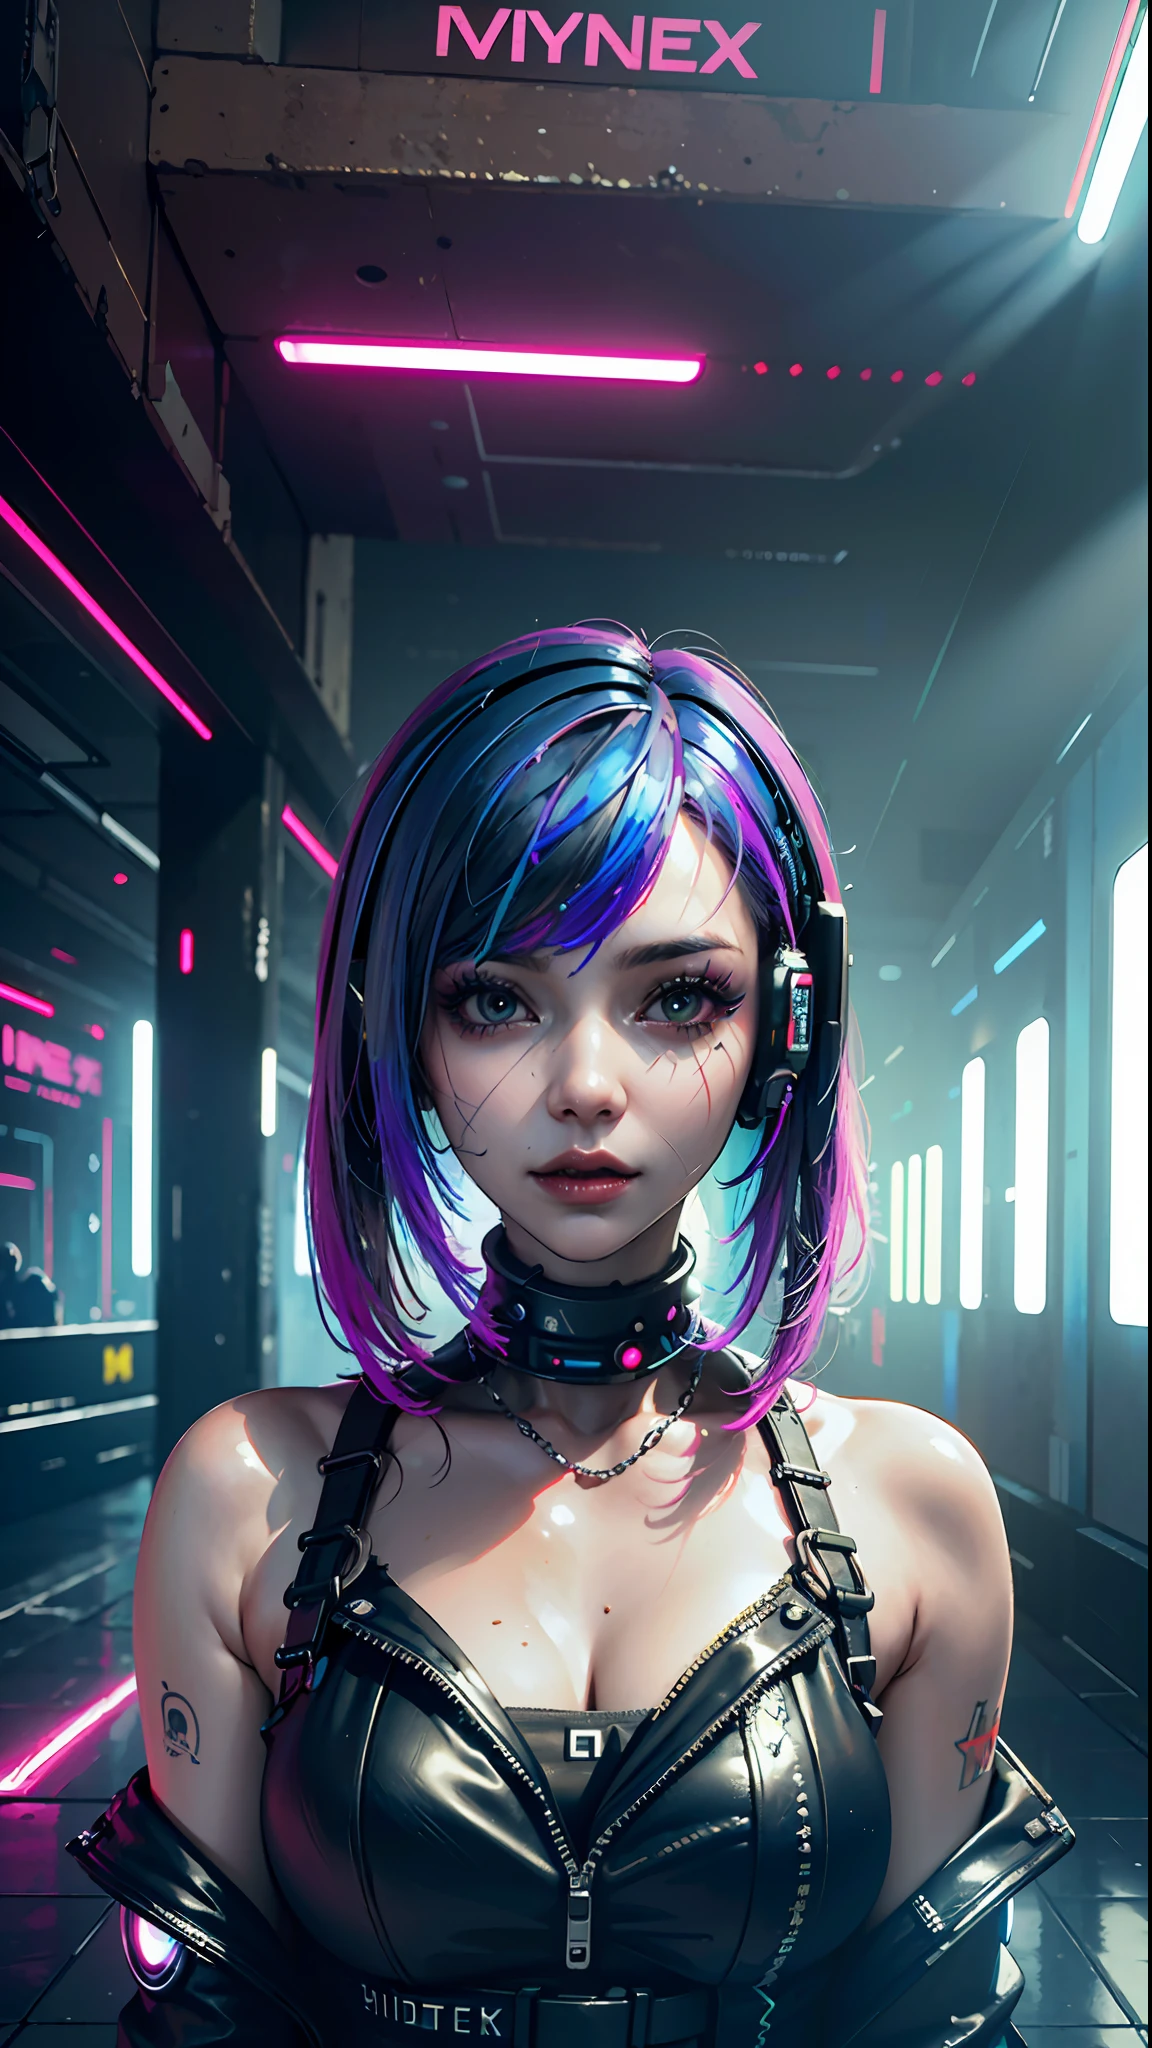 ((beste Qualität)), ((Meisterwerk)), (sehr detailliert:1.3), 3D, Schön (cyberpunk:1.3) Hacker-Frau mit gefärbten Haaren, schwarze Kleidung, Blick in die Kamera